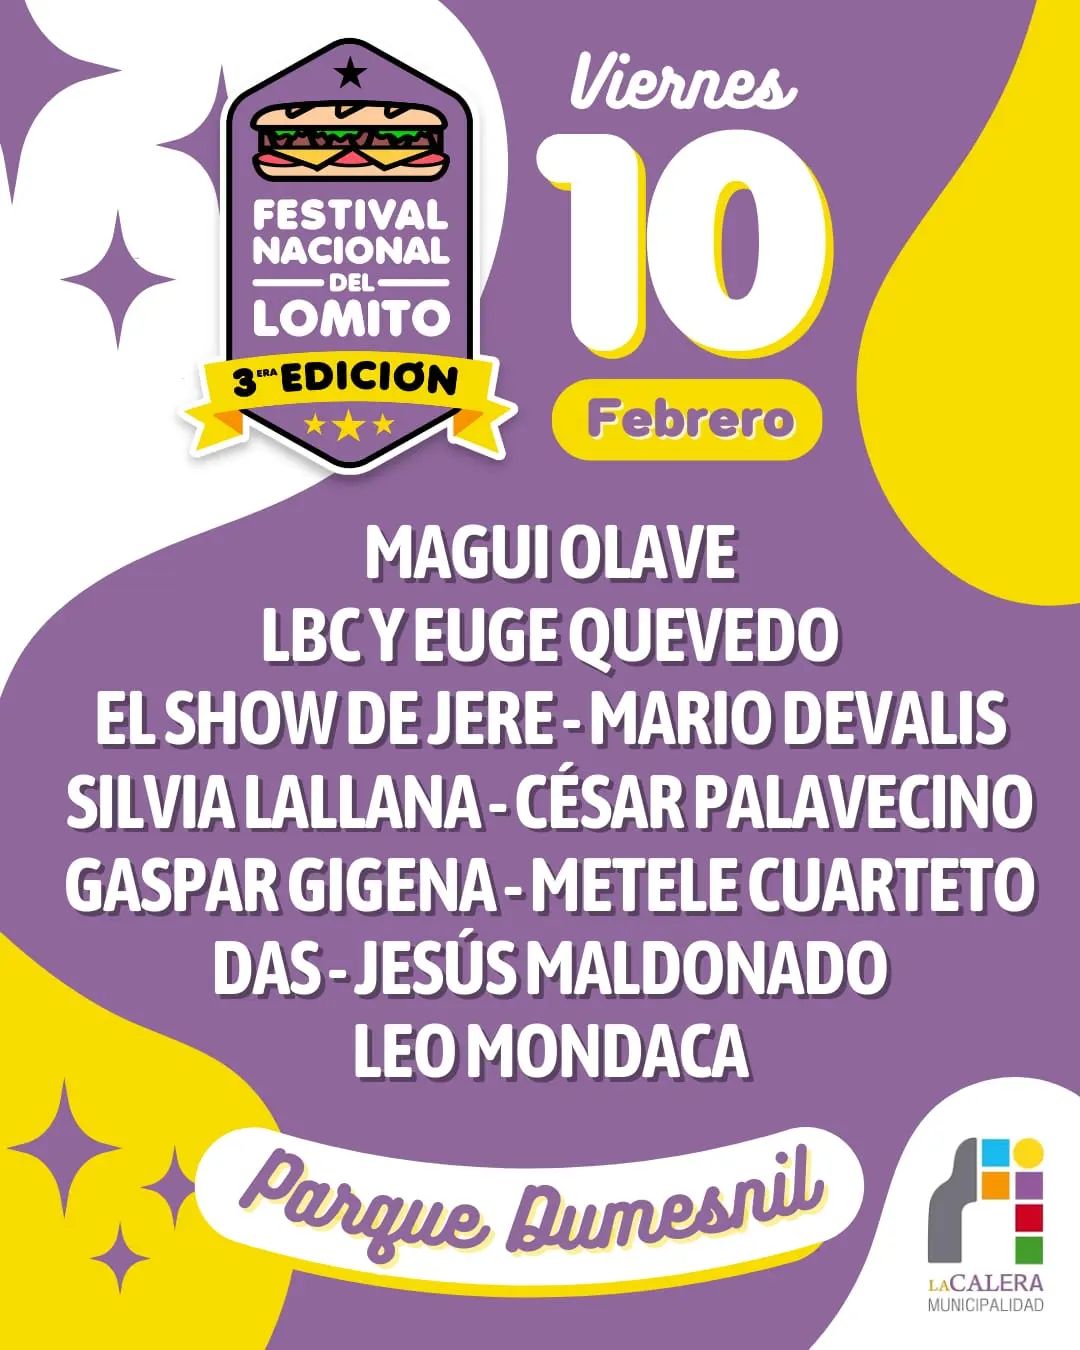 Festival Nacional del Lomito en La Calera: todo lo que tenés que saber • Canal C